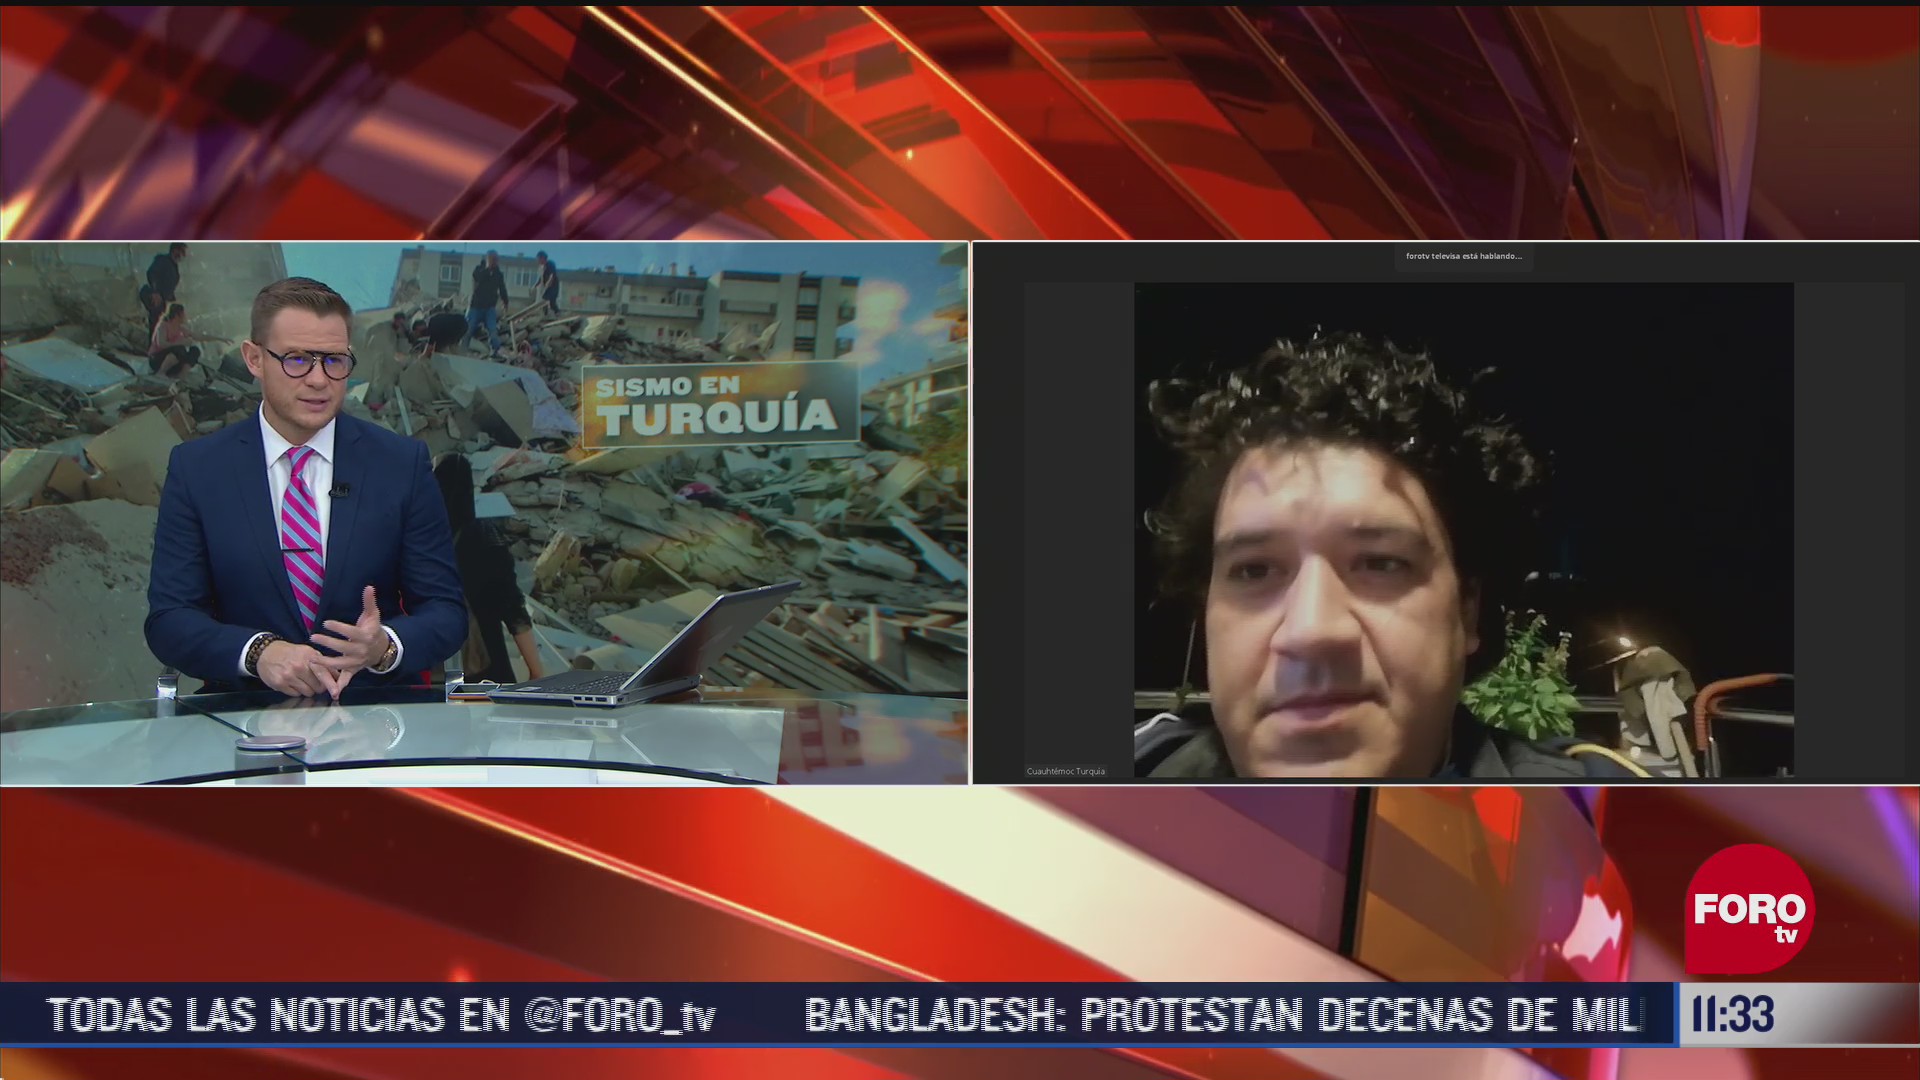 situacion en turquia por sismo es grave dice mexicano en izmir